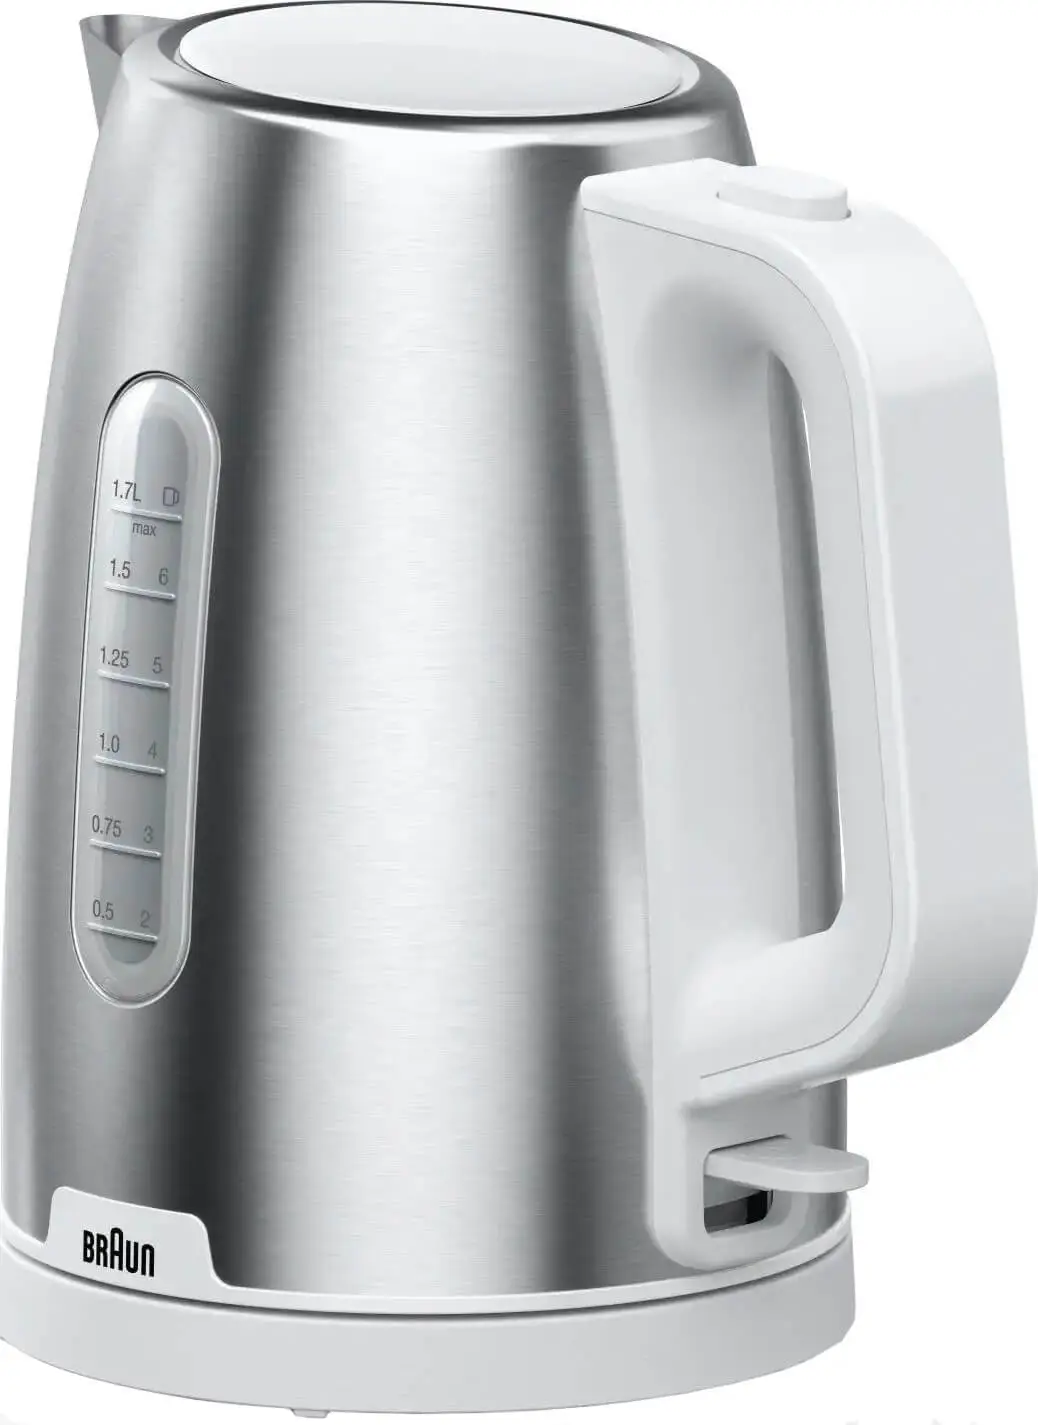 Чайник электрический Braun WK1500WH 1.7 л белый, серебристый гриль braun cg 9167 серебристый